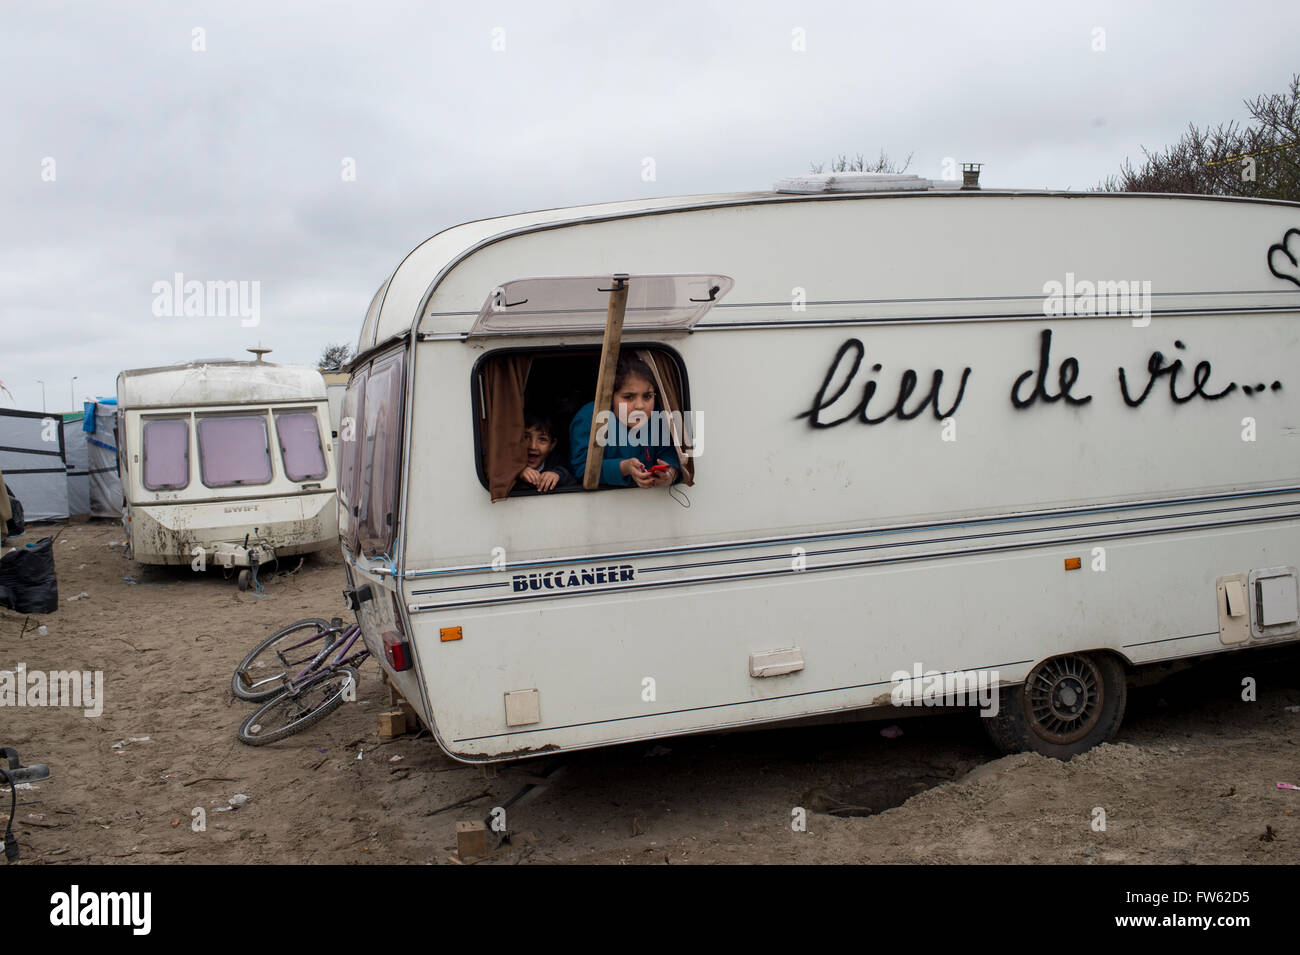 Frankreich, Calais. Flüchtlingslager - die so genannte Dschungel. Zwei junge kurdische irakische Flüchtlingskinder schauen aus einem Wohnwagen-Fenster Stockfoto